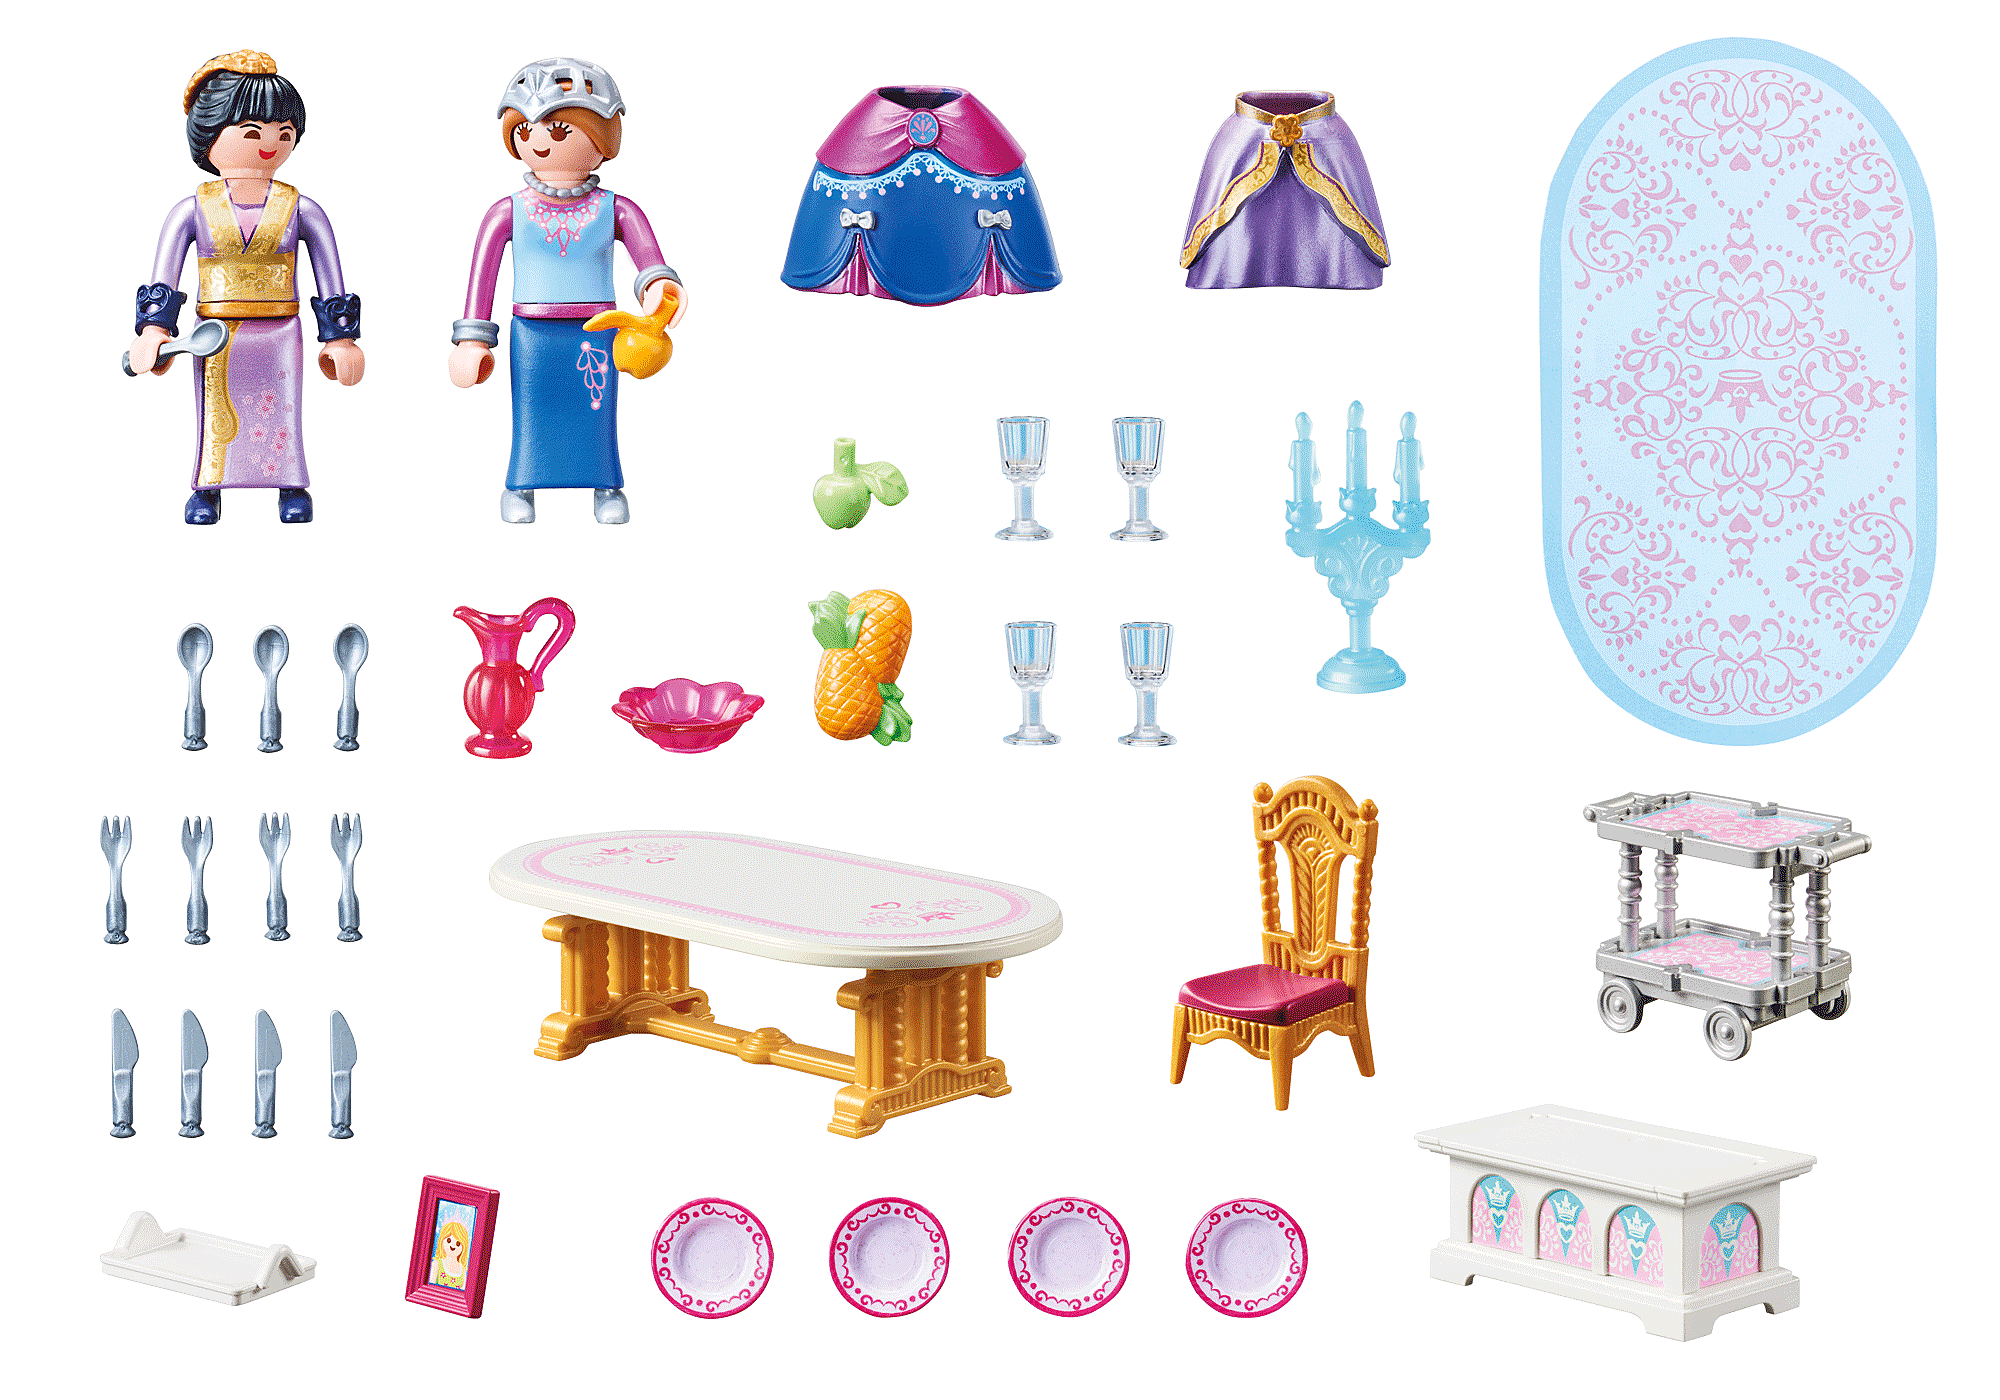 70455 - Playmobil Princess - Salle à manger royale Playmobil : King Jouet, Playmobil  Playmobil - Jeux d'imitation & Mondes imaginaires